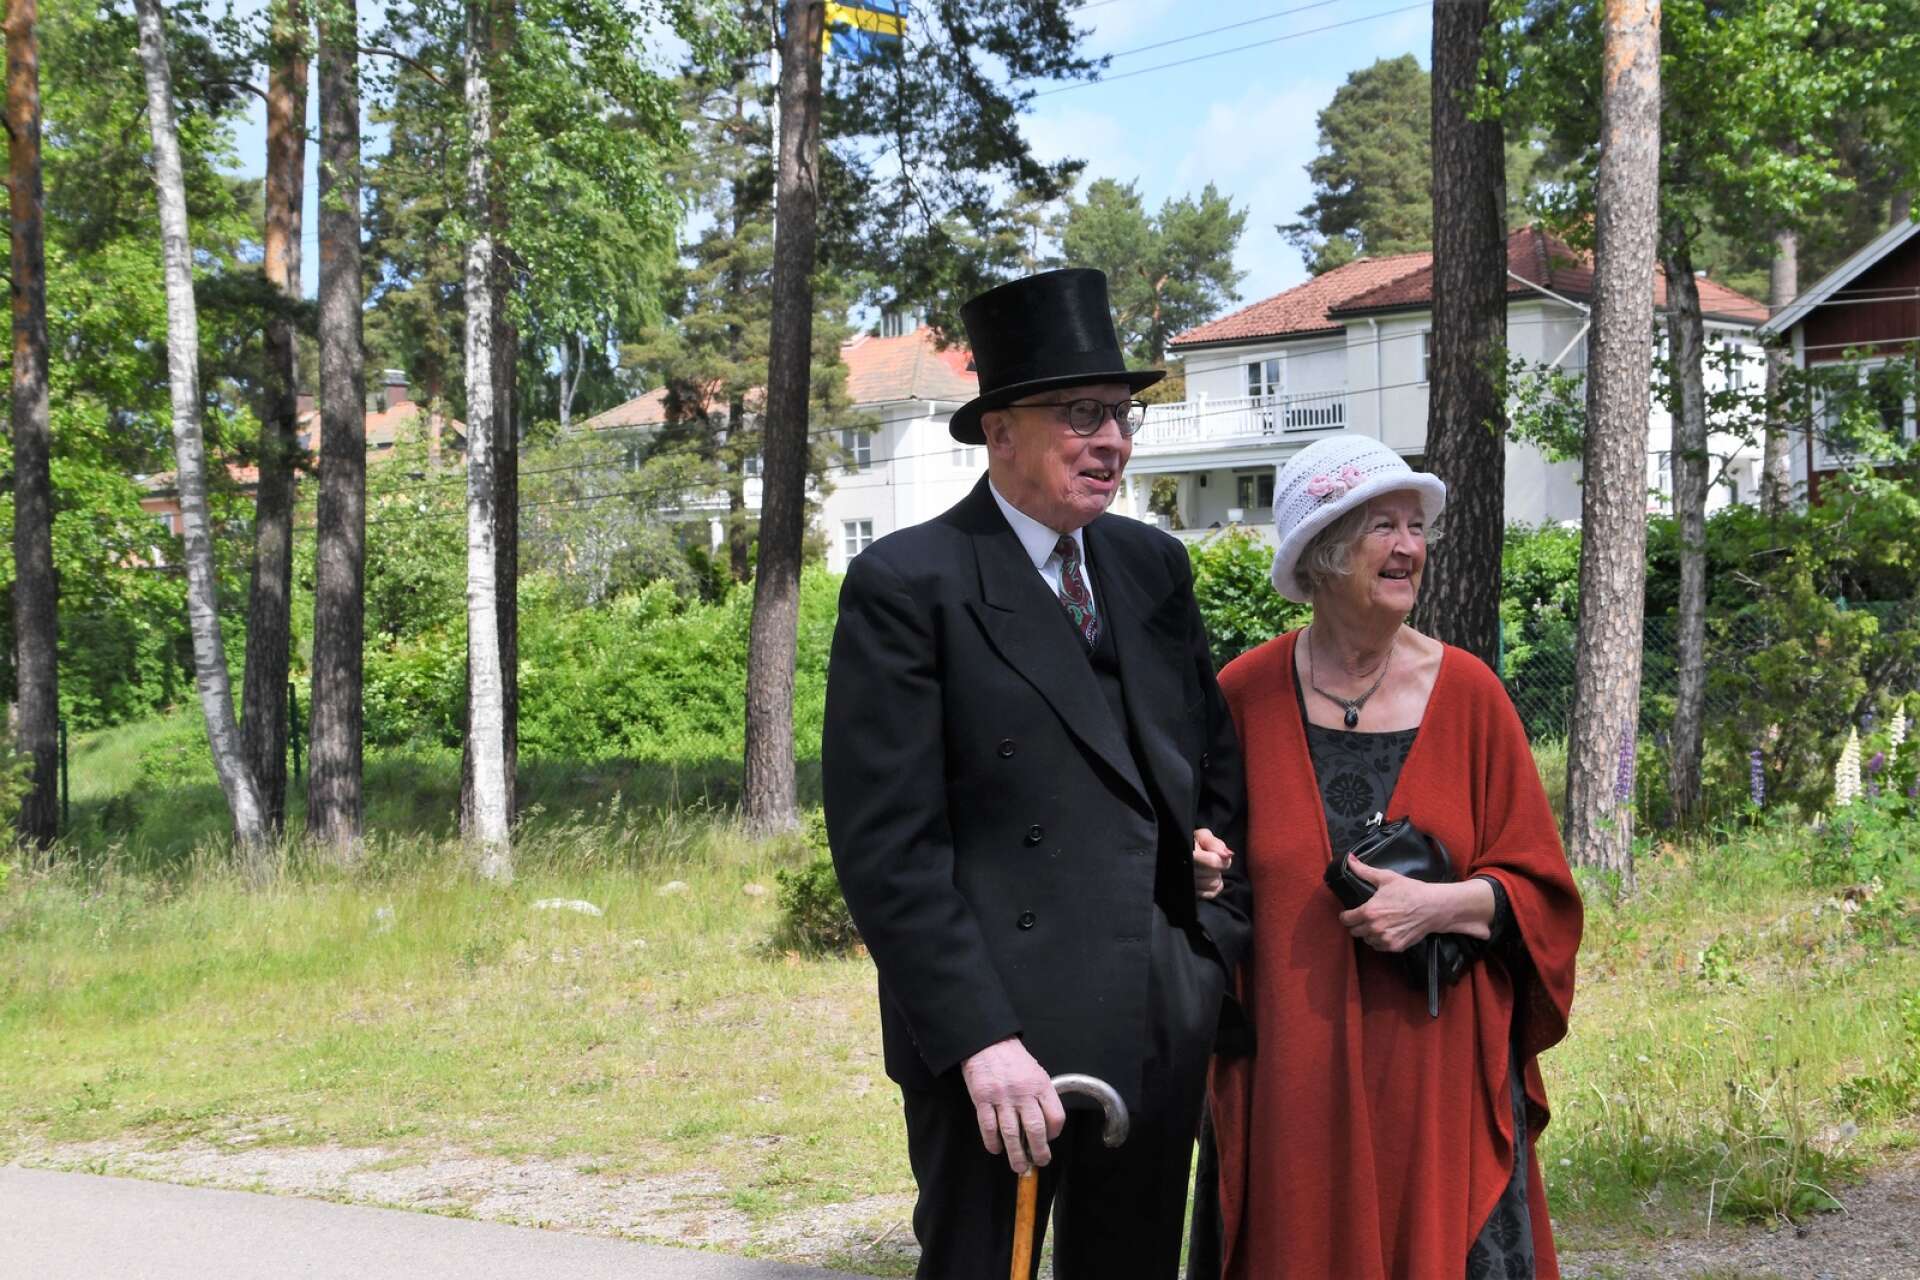 Arvikaverkens grundare Per Andersson med fru gestaltas av David och Ulla Anderson.